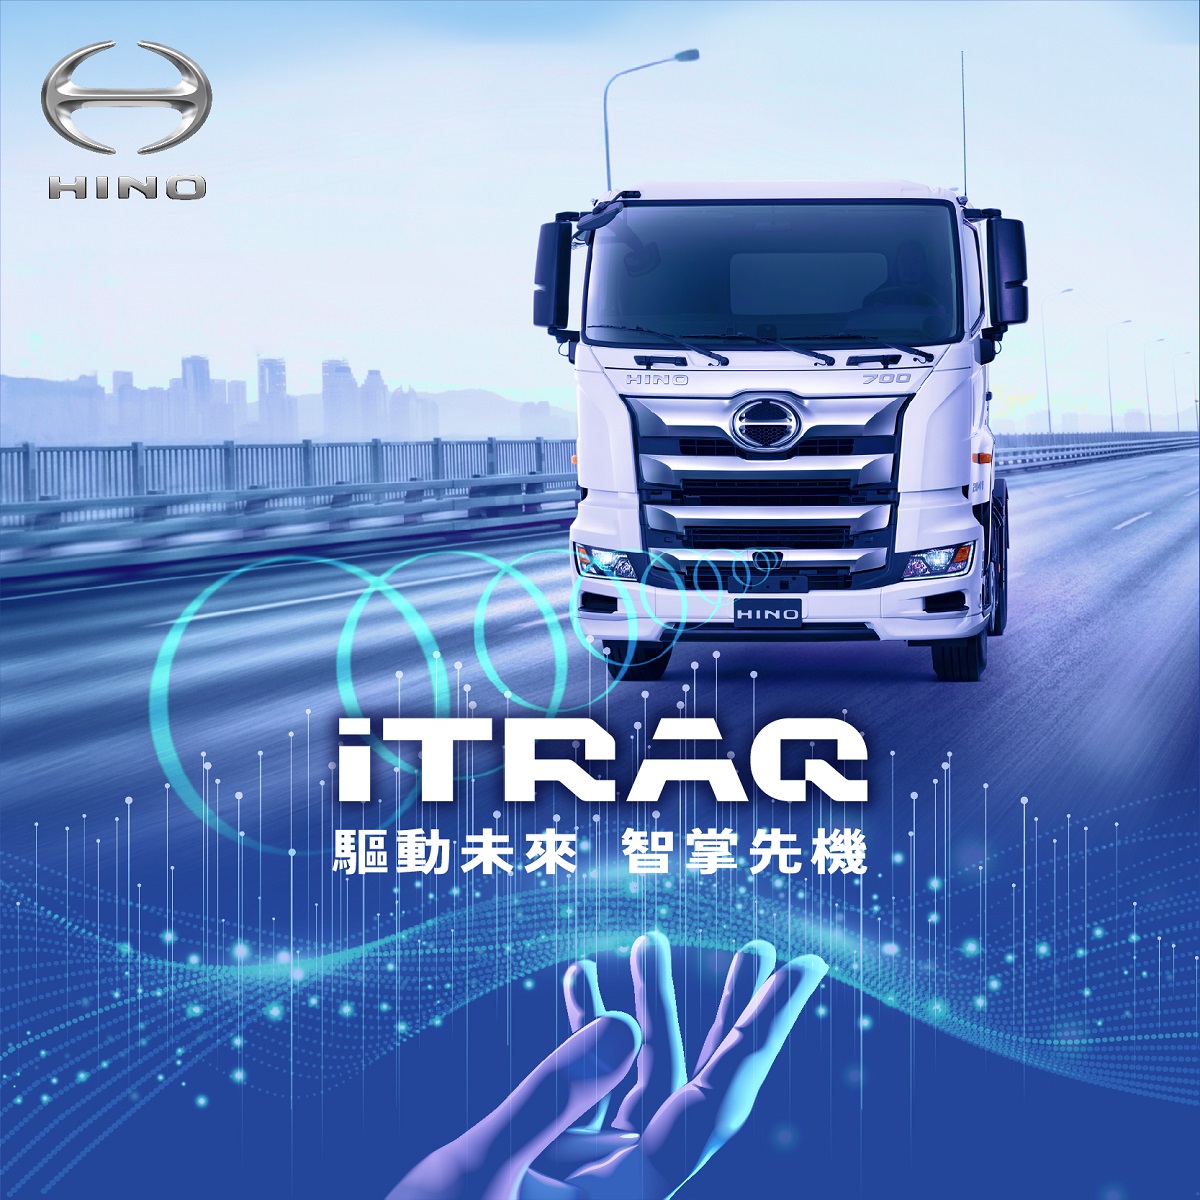 和泰商用車全新發表 iTRAQ車聯管理系統8噸、17噸及曳引車三車款優先搭載